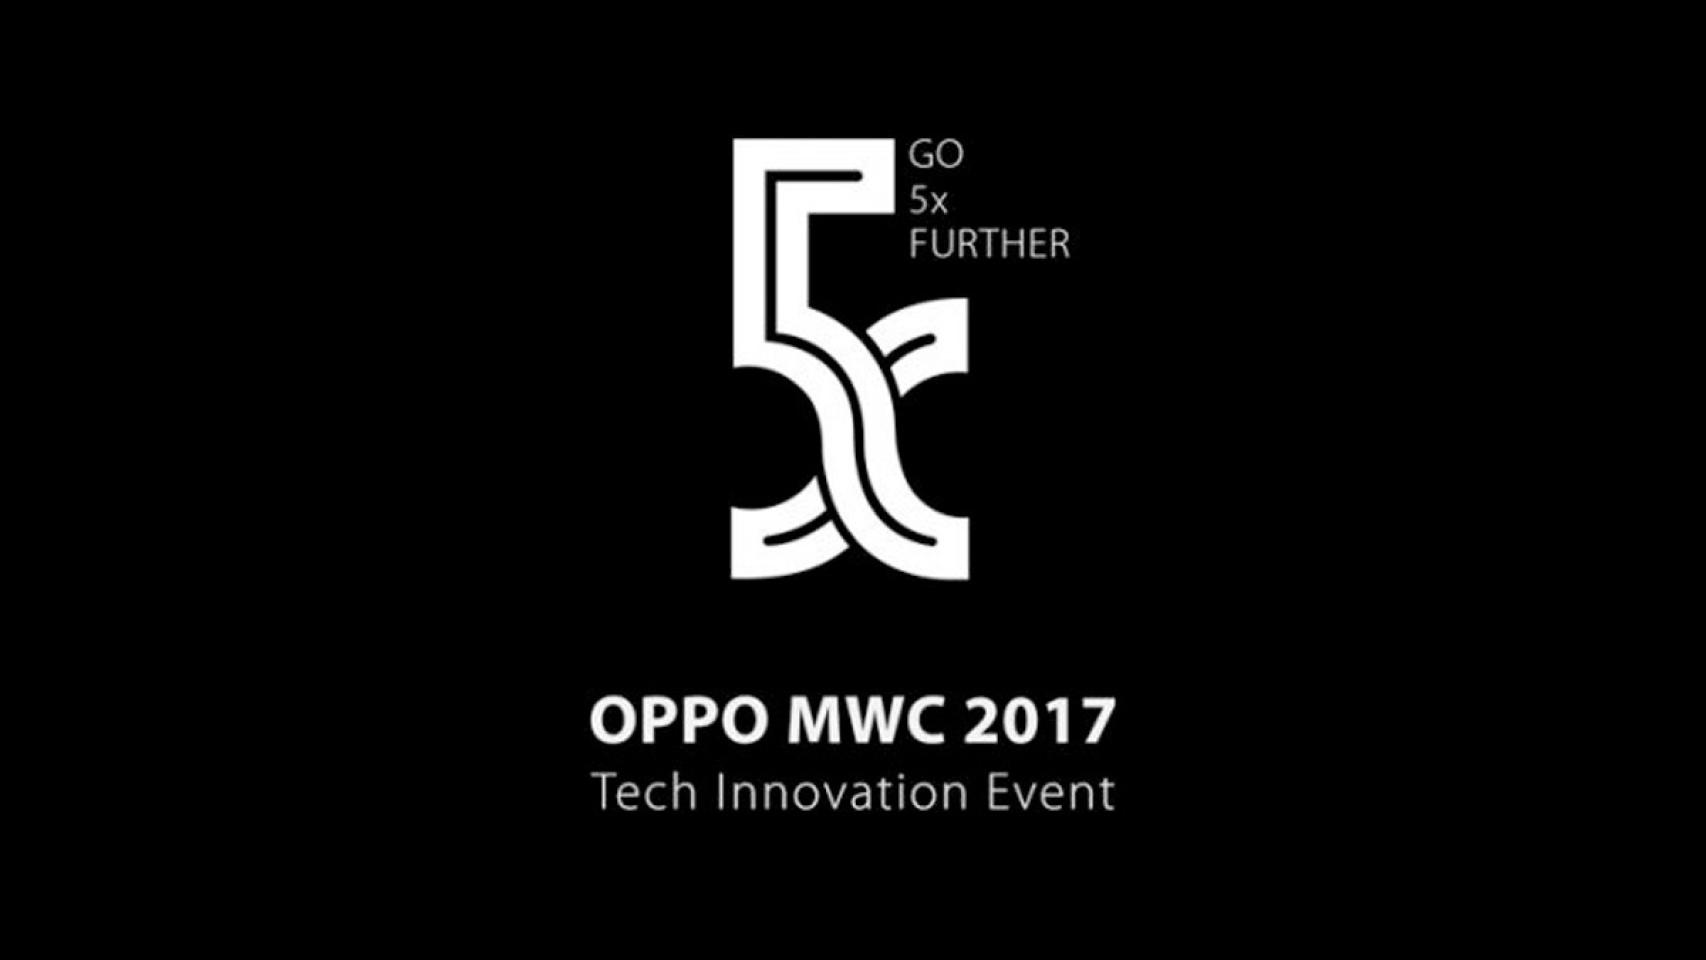 OPPO presentará 5x, una nueva tecnología fotográfica, en el MWC 2017